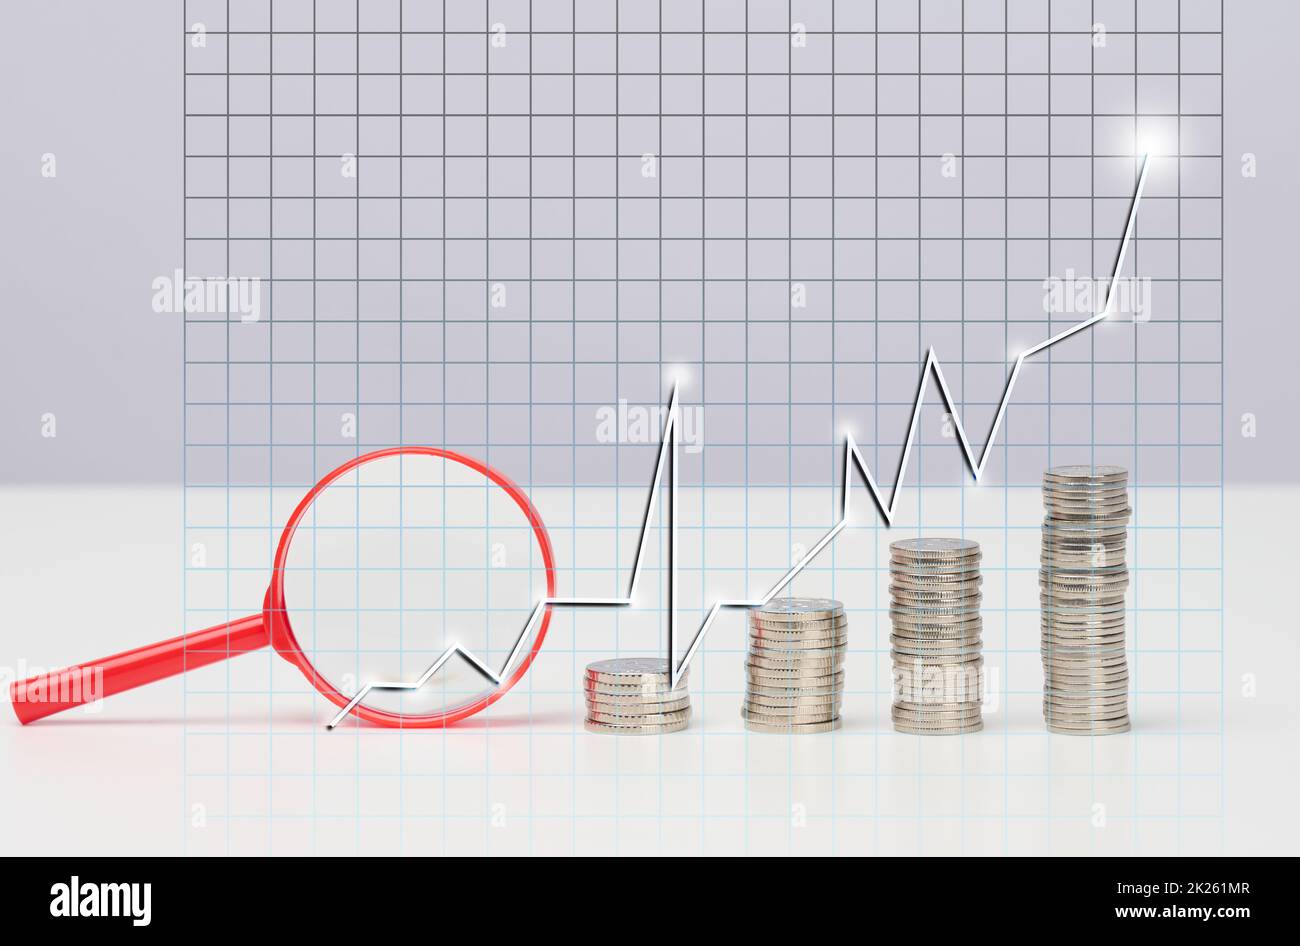 Graphique d'augmentation de la pile de pièces de monnaie avec flèches. Gestion des risques, financier et investissement, tableau blanc Banque D'Images